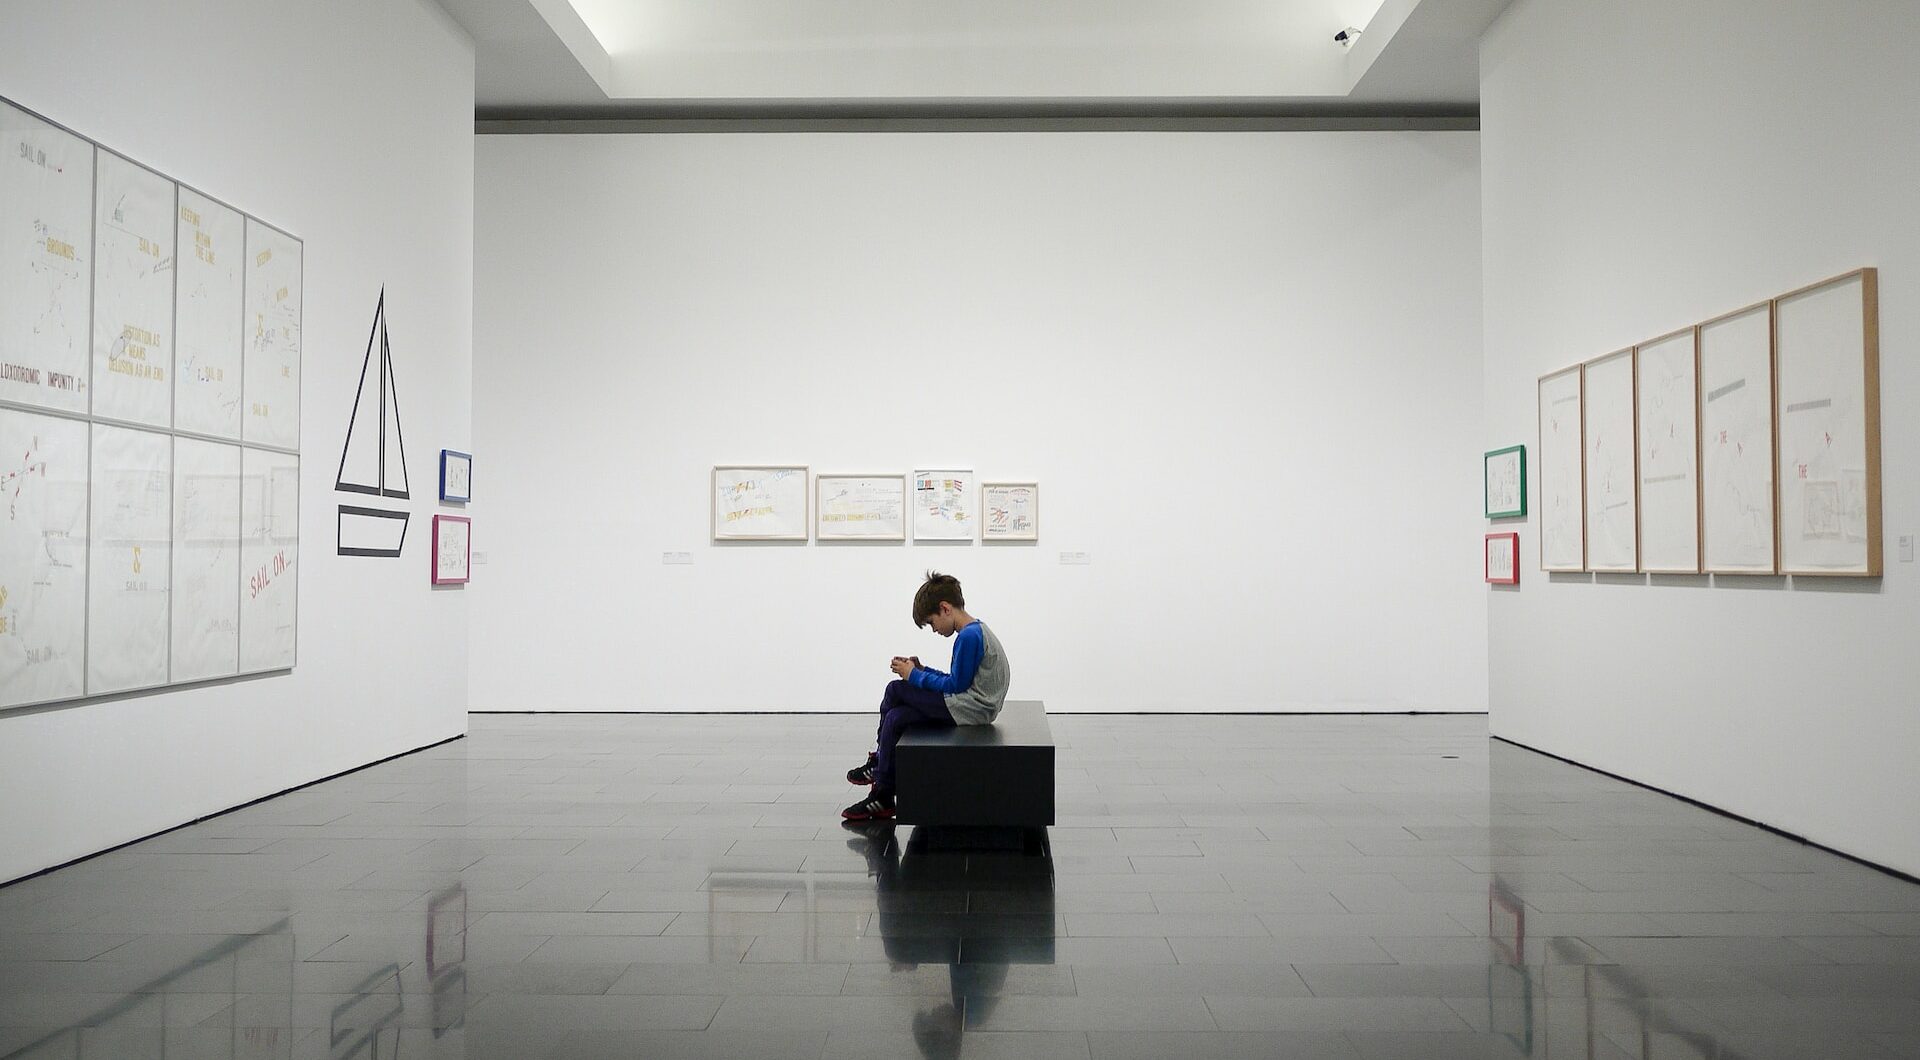 Gamification im Museum: Junge sitzt alleine in einer Kunstausstellung